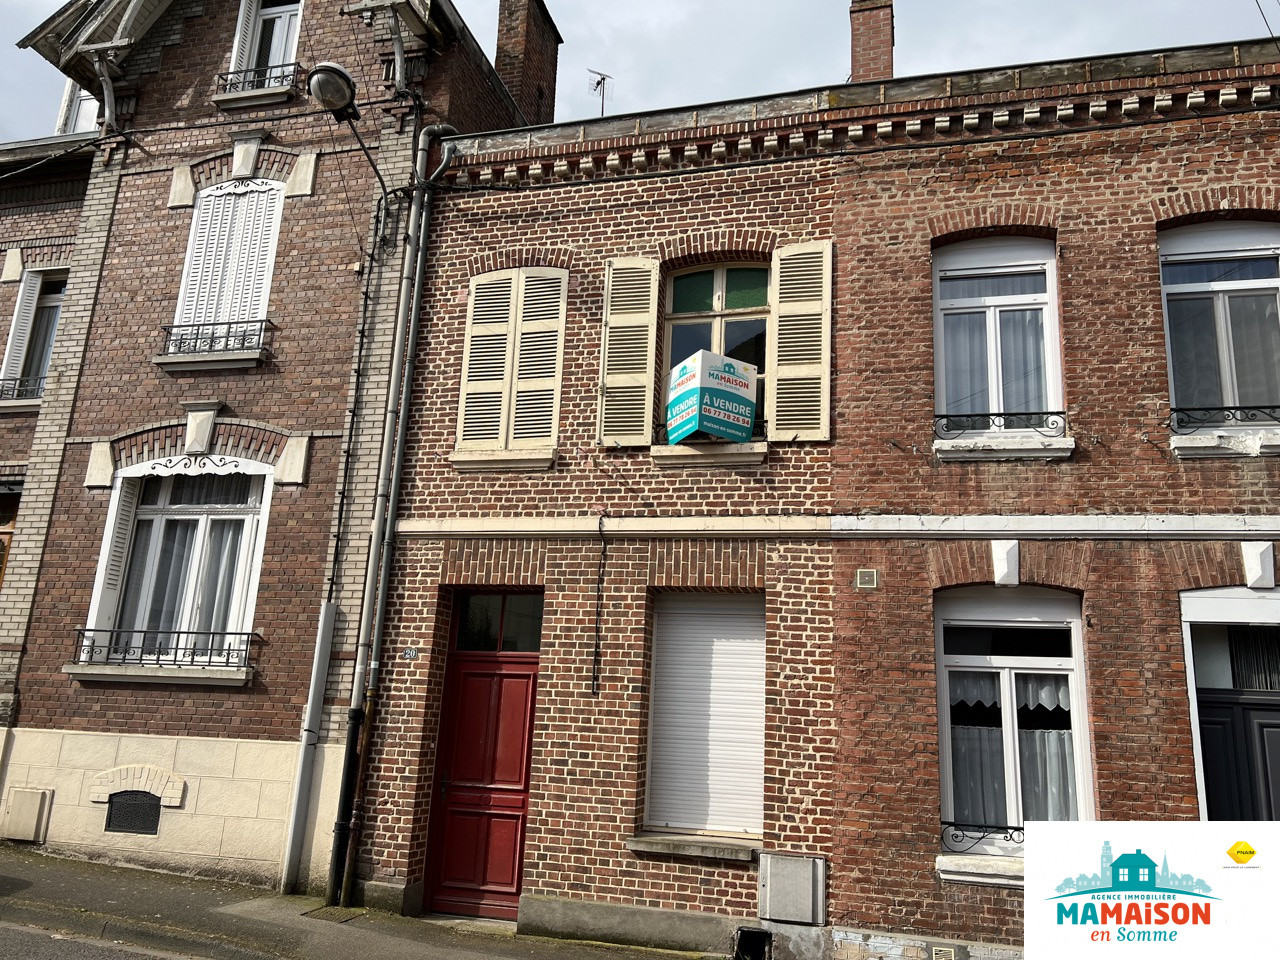 Immo80 – L'immobilier à Amiens et dans la Somme-Centre ville Albert, maison à rénover, 85,5 m2, 4 pièces, 2 chambres, jardin clos sur terrain d’environ 170 m2